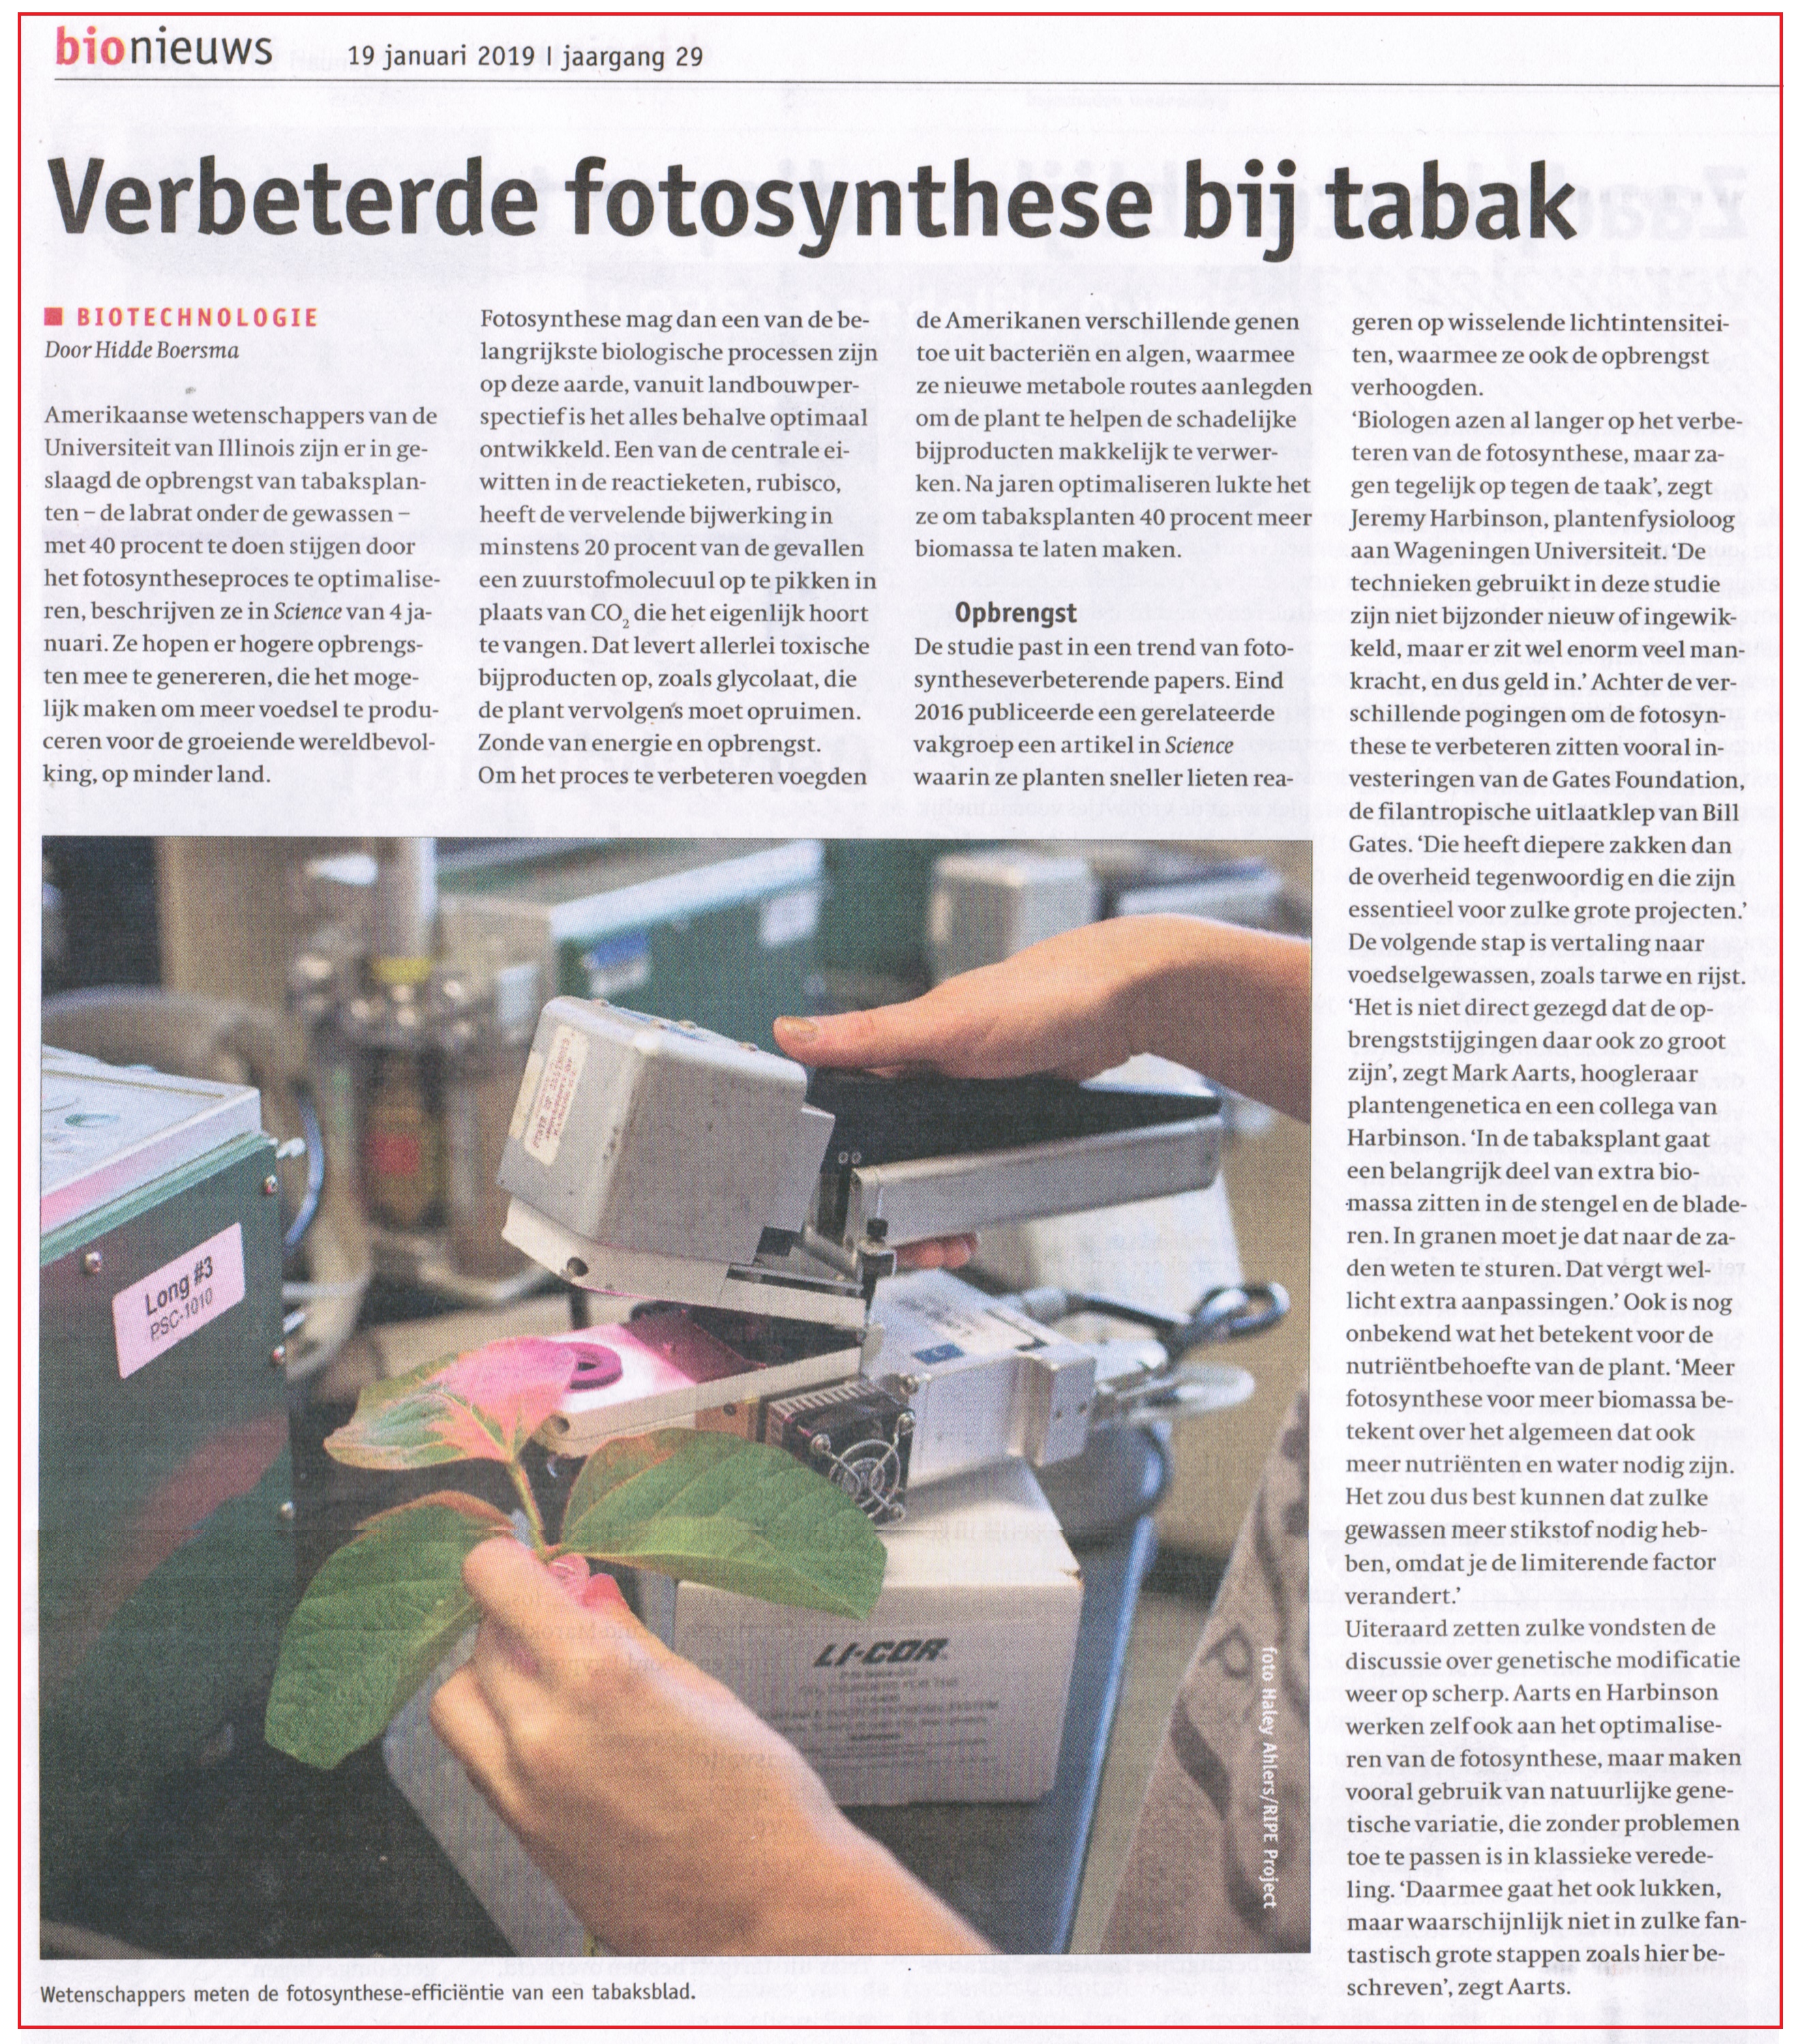 Verbeterde fotosynthese bij tabak